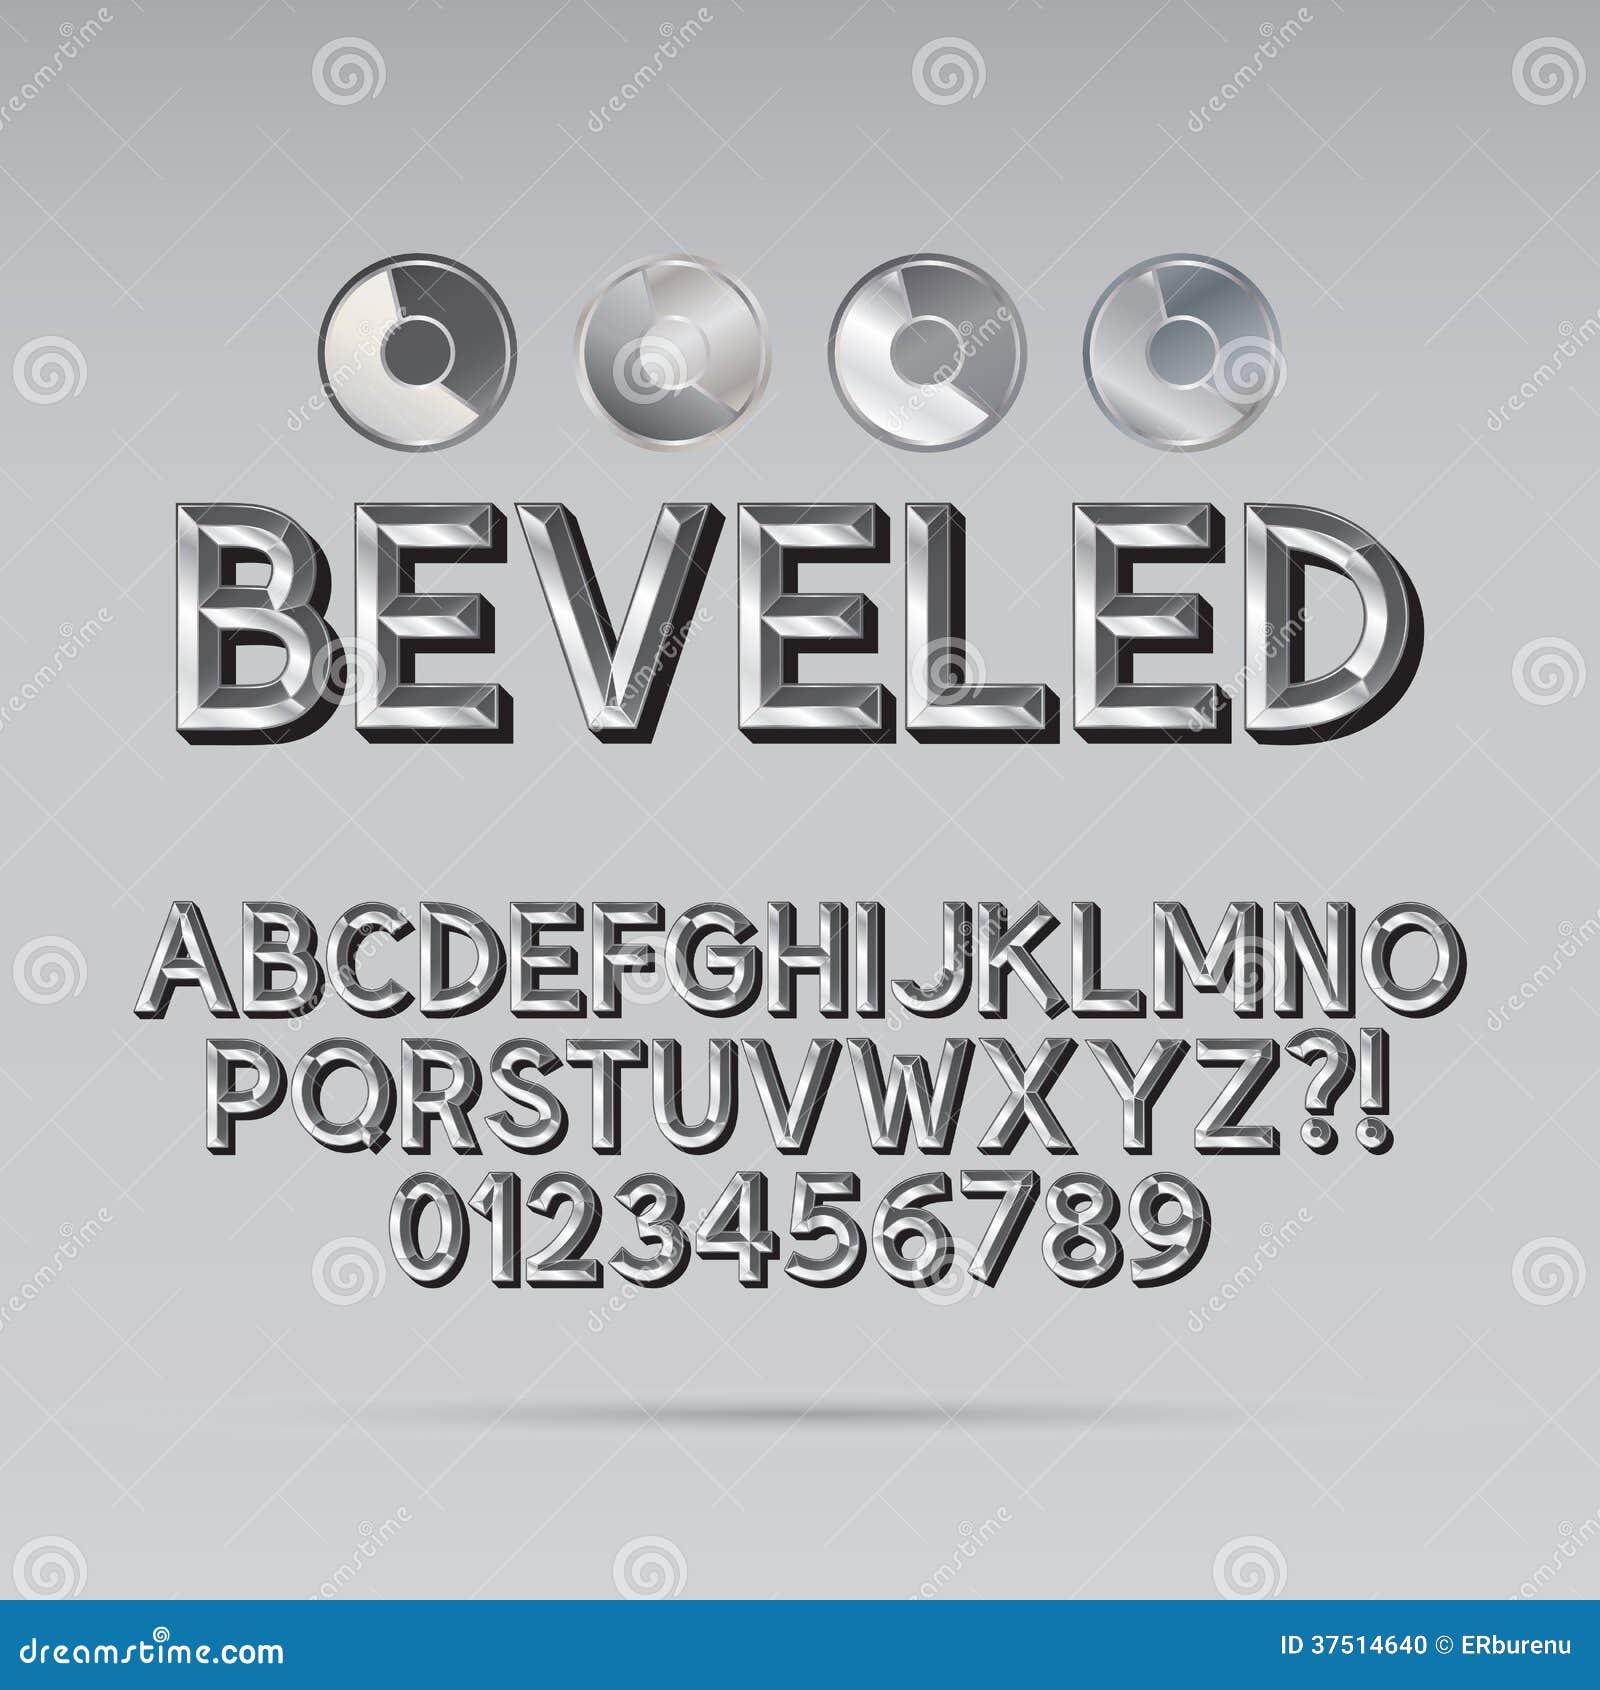 steel beveled outline font and digit